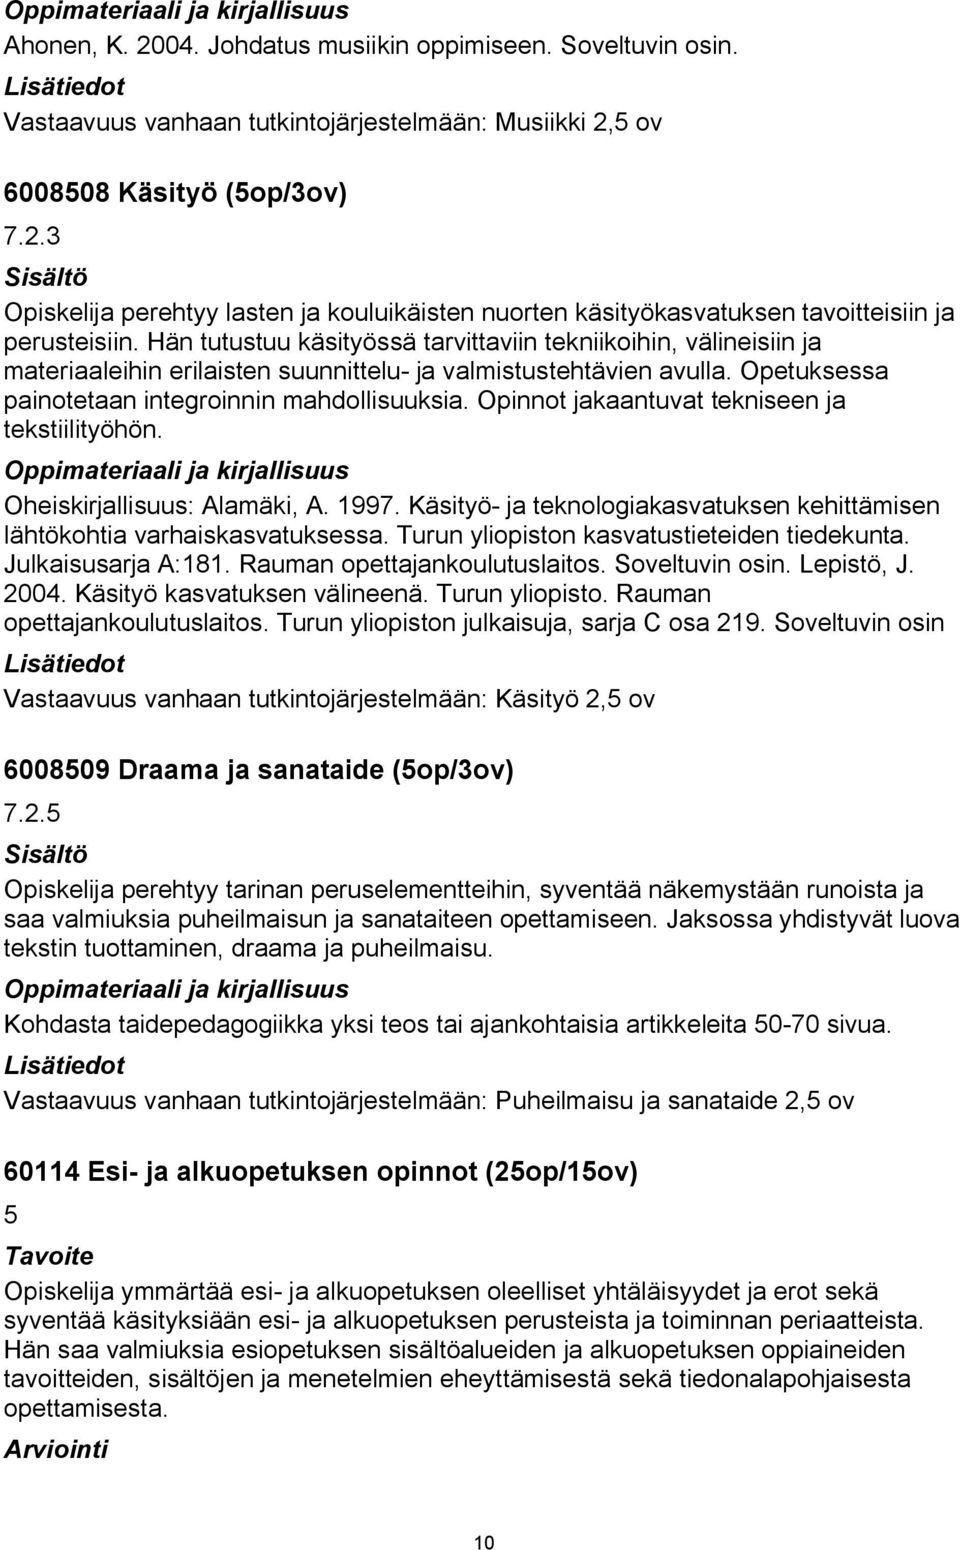 Opinnot jakaantuvat tekniseen ja tekstiilityöhön. Oheiskirjallisuus: Alamäki, A. 1997. Käsityö ja teknologiakasvatuksen kehittämisen lähtökohtia varhaiskasvatuksessa.